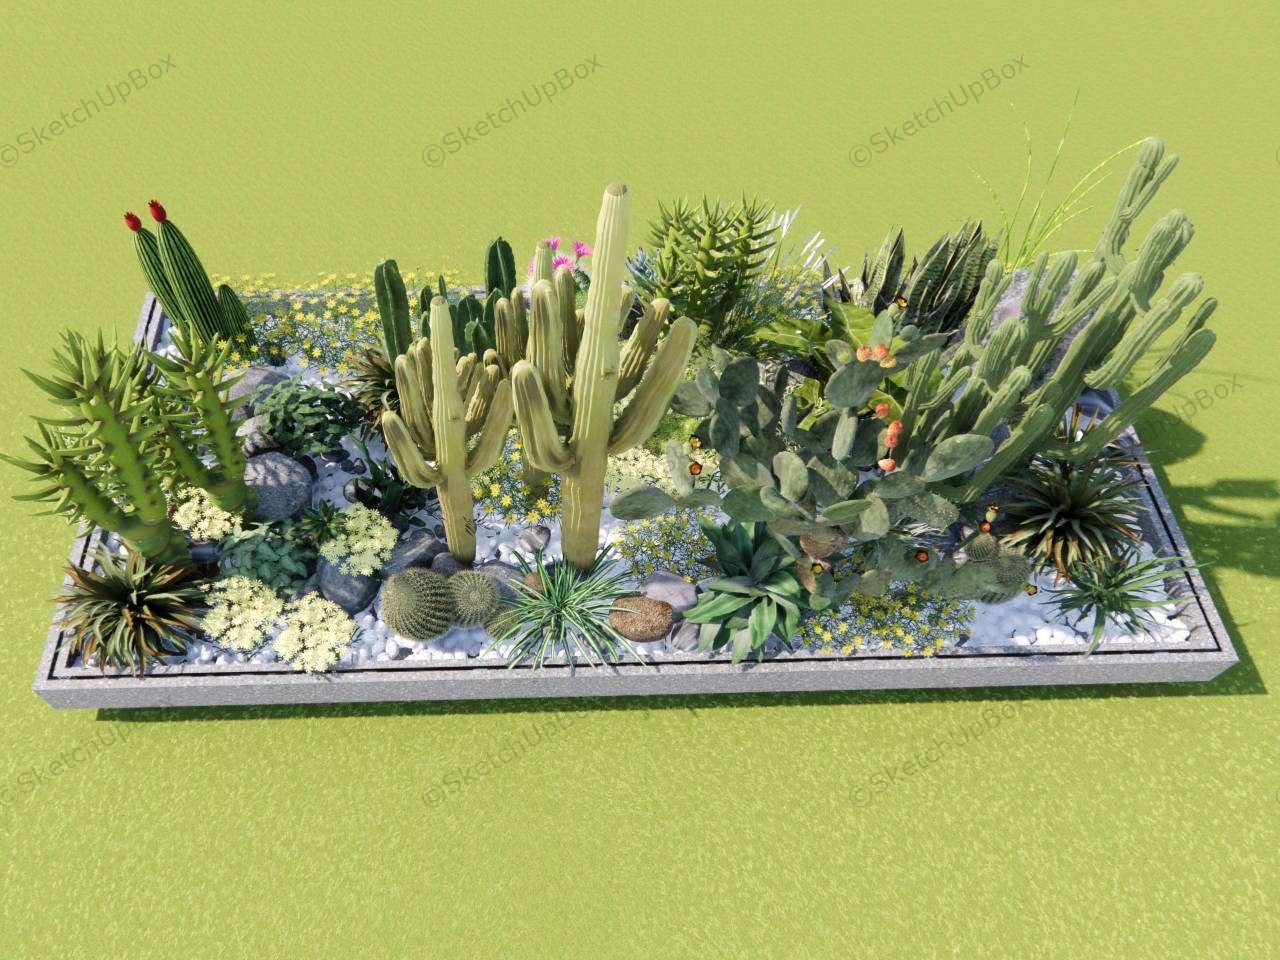 Cactus Garden Ideas Landscape sketchup model preview - SketchupBox